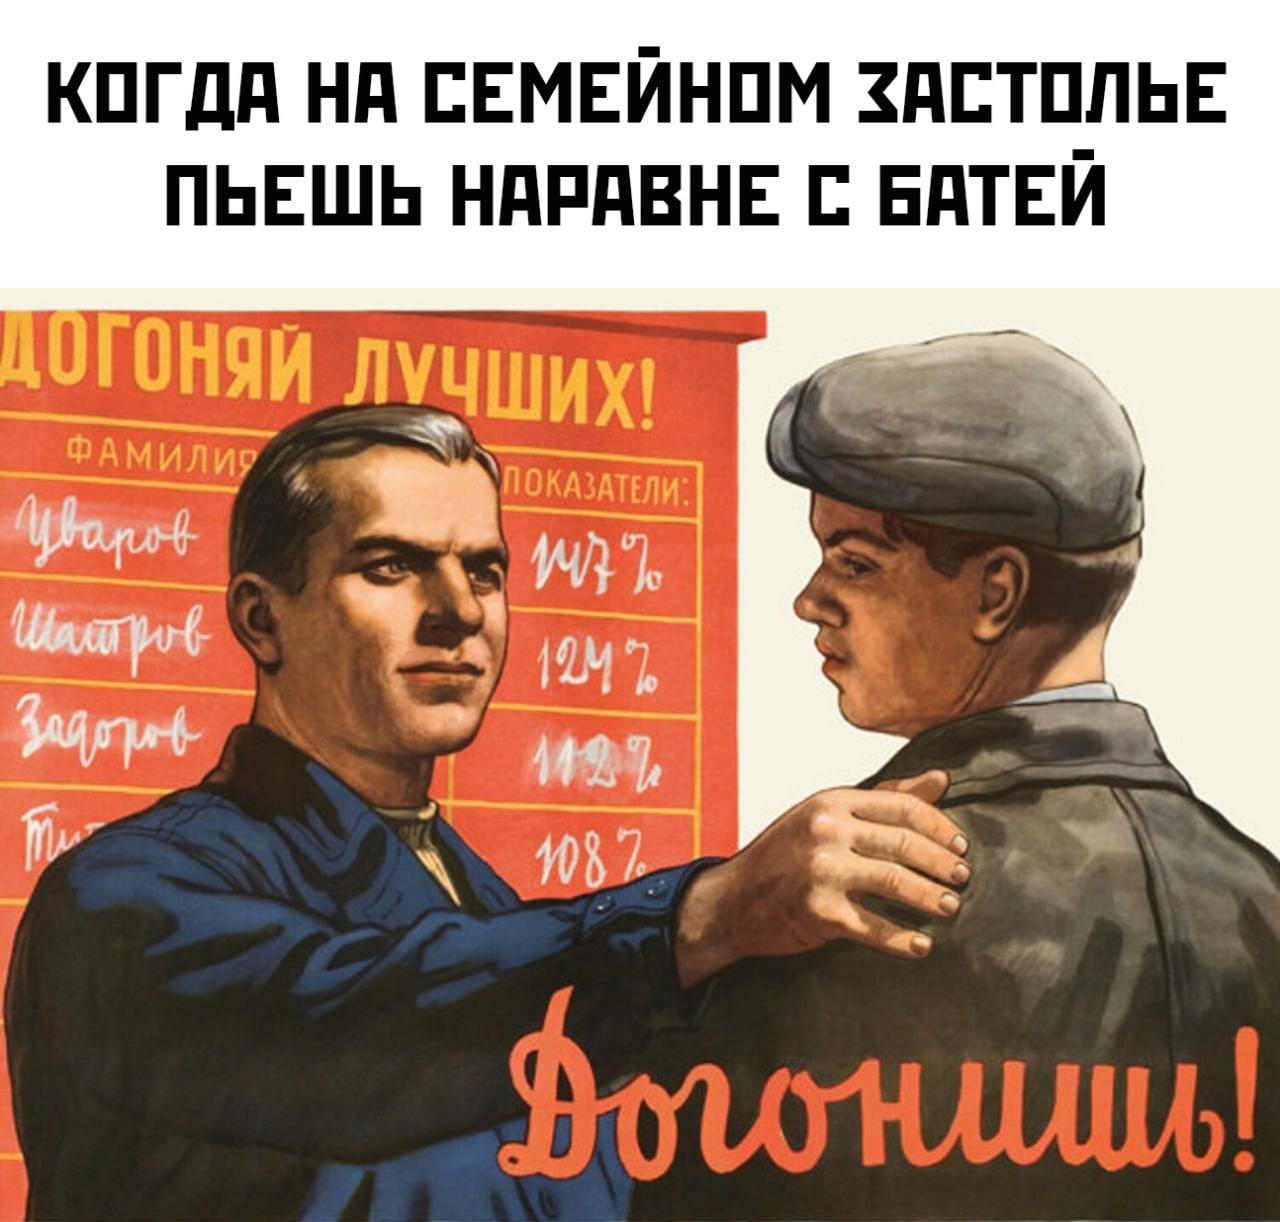 Догонишь вид. Советские плакаты товарищ. Прикольные переделанные советские плакаты. Советские плакаты про работу. Советские плакаты приколы юмор.